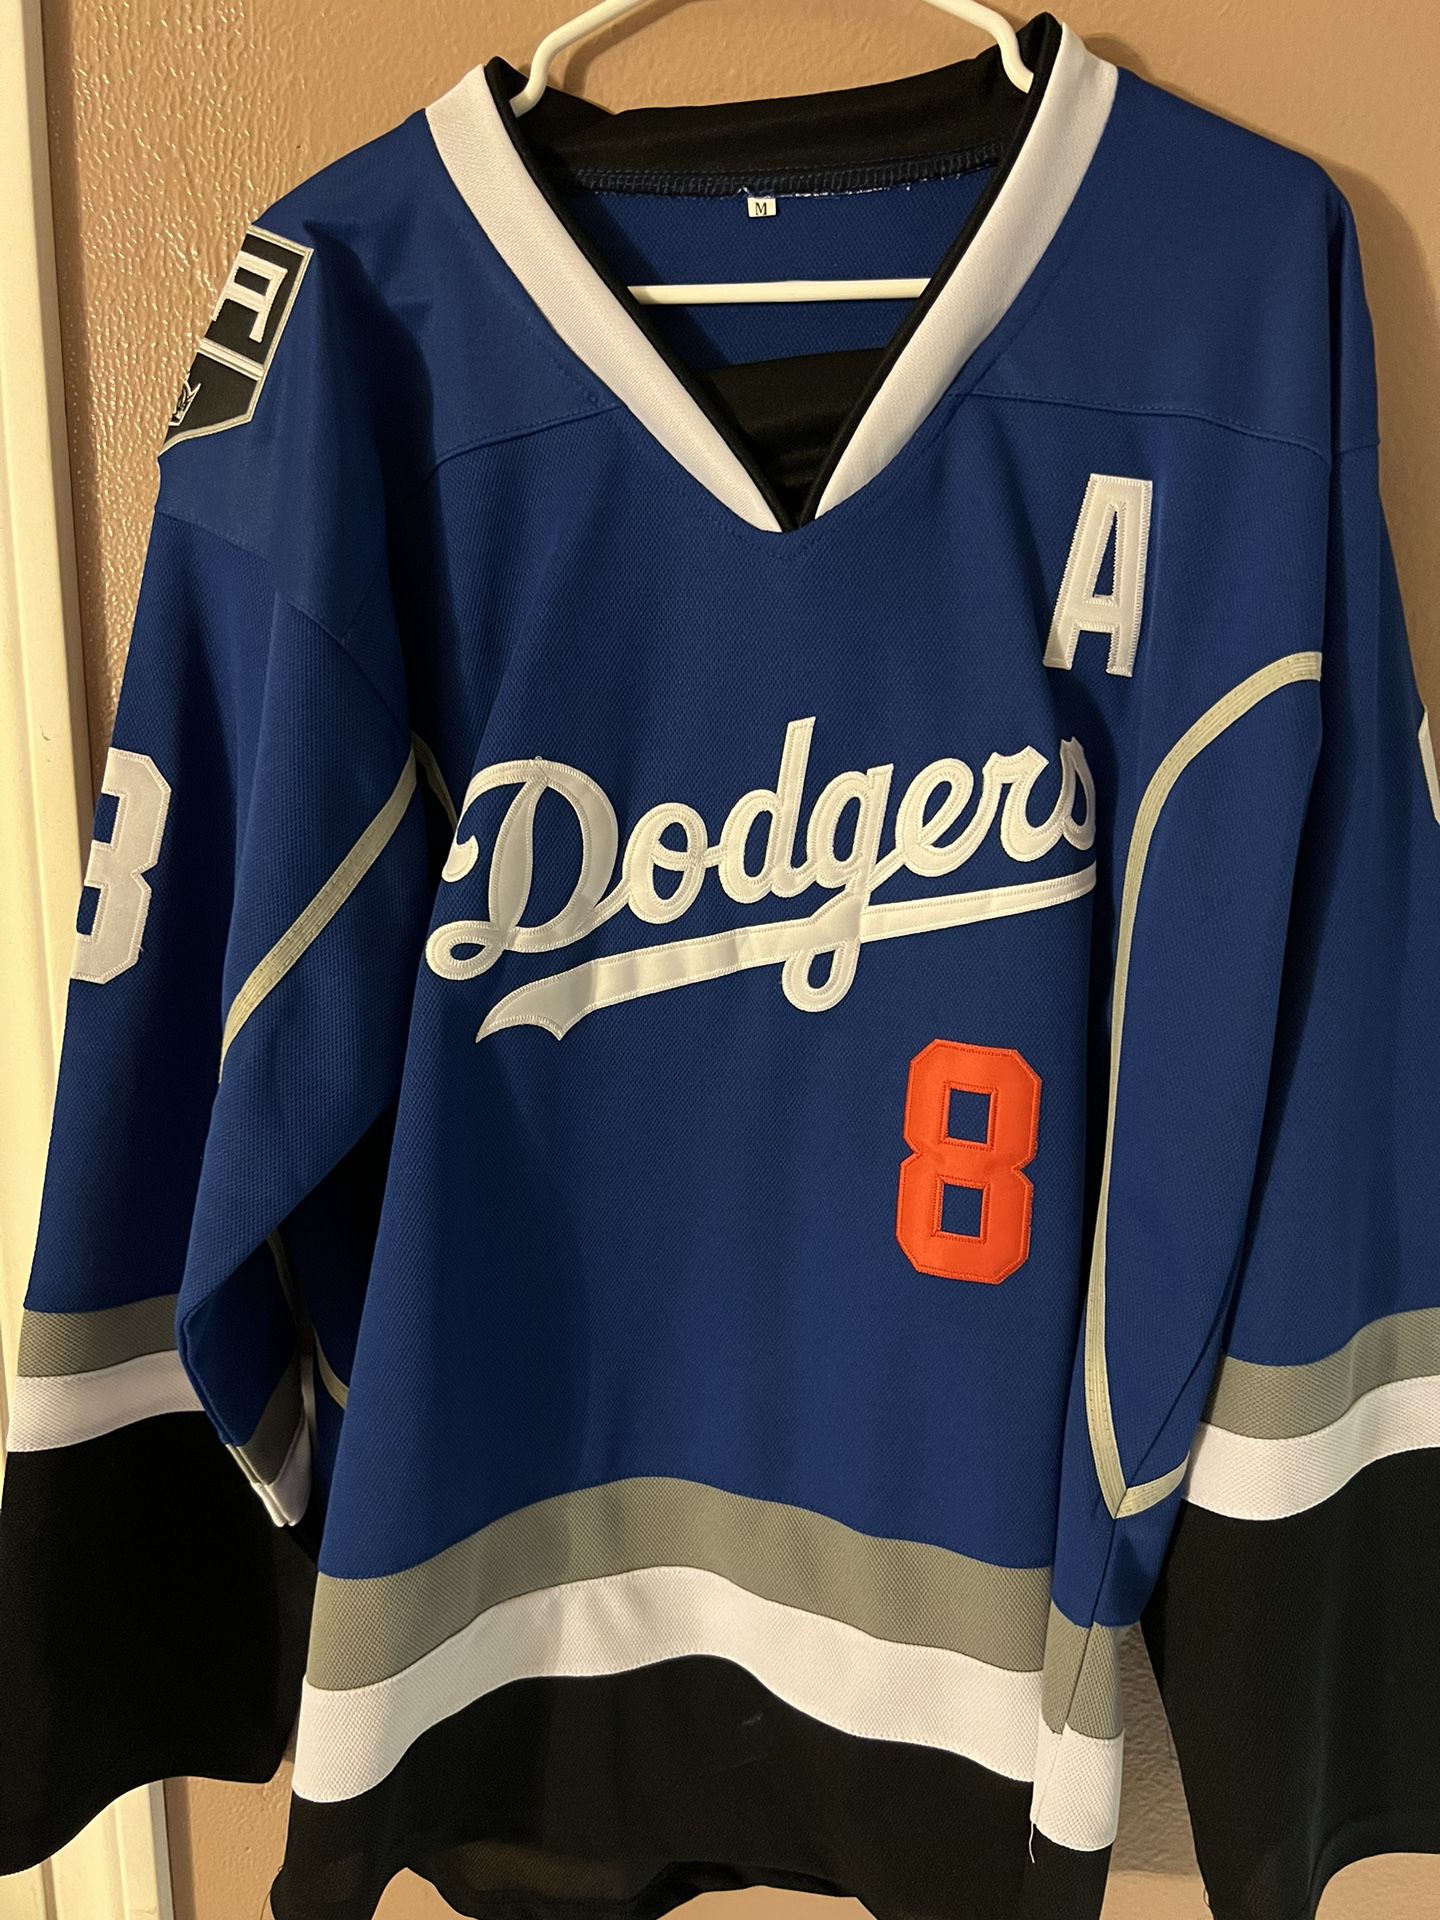 Las Vegas Raiders Hockey Jersey for Sale in Lawndale, CA - OfferUp